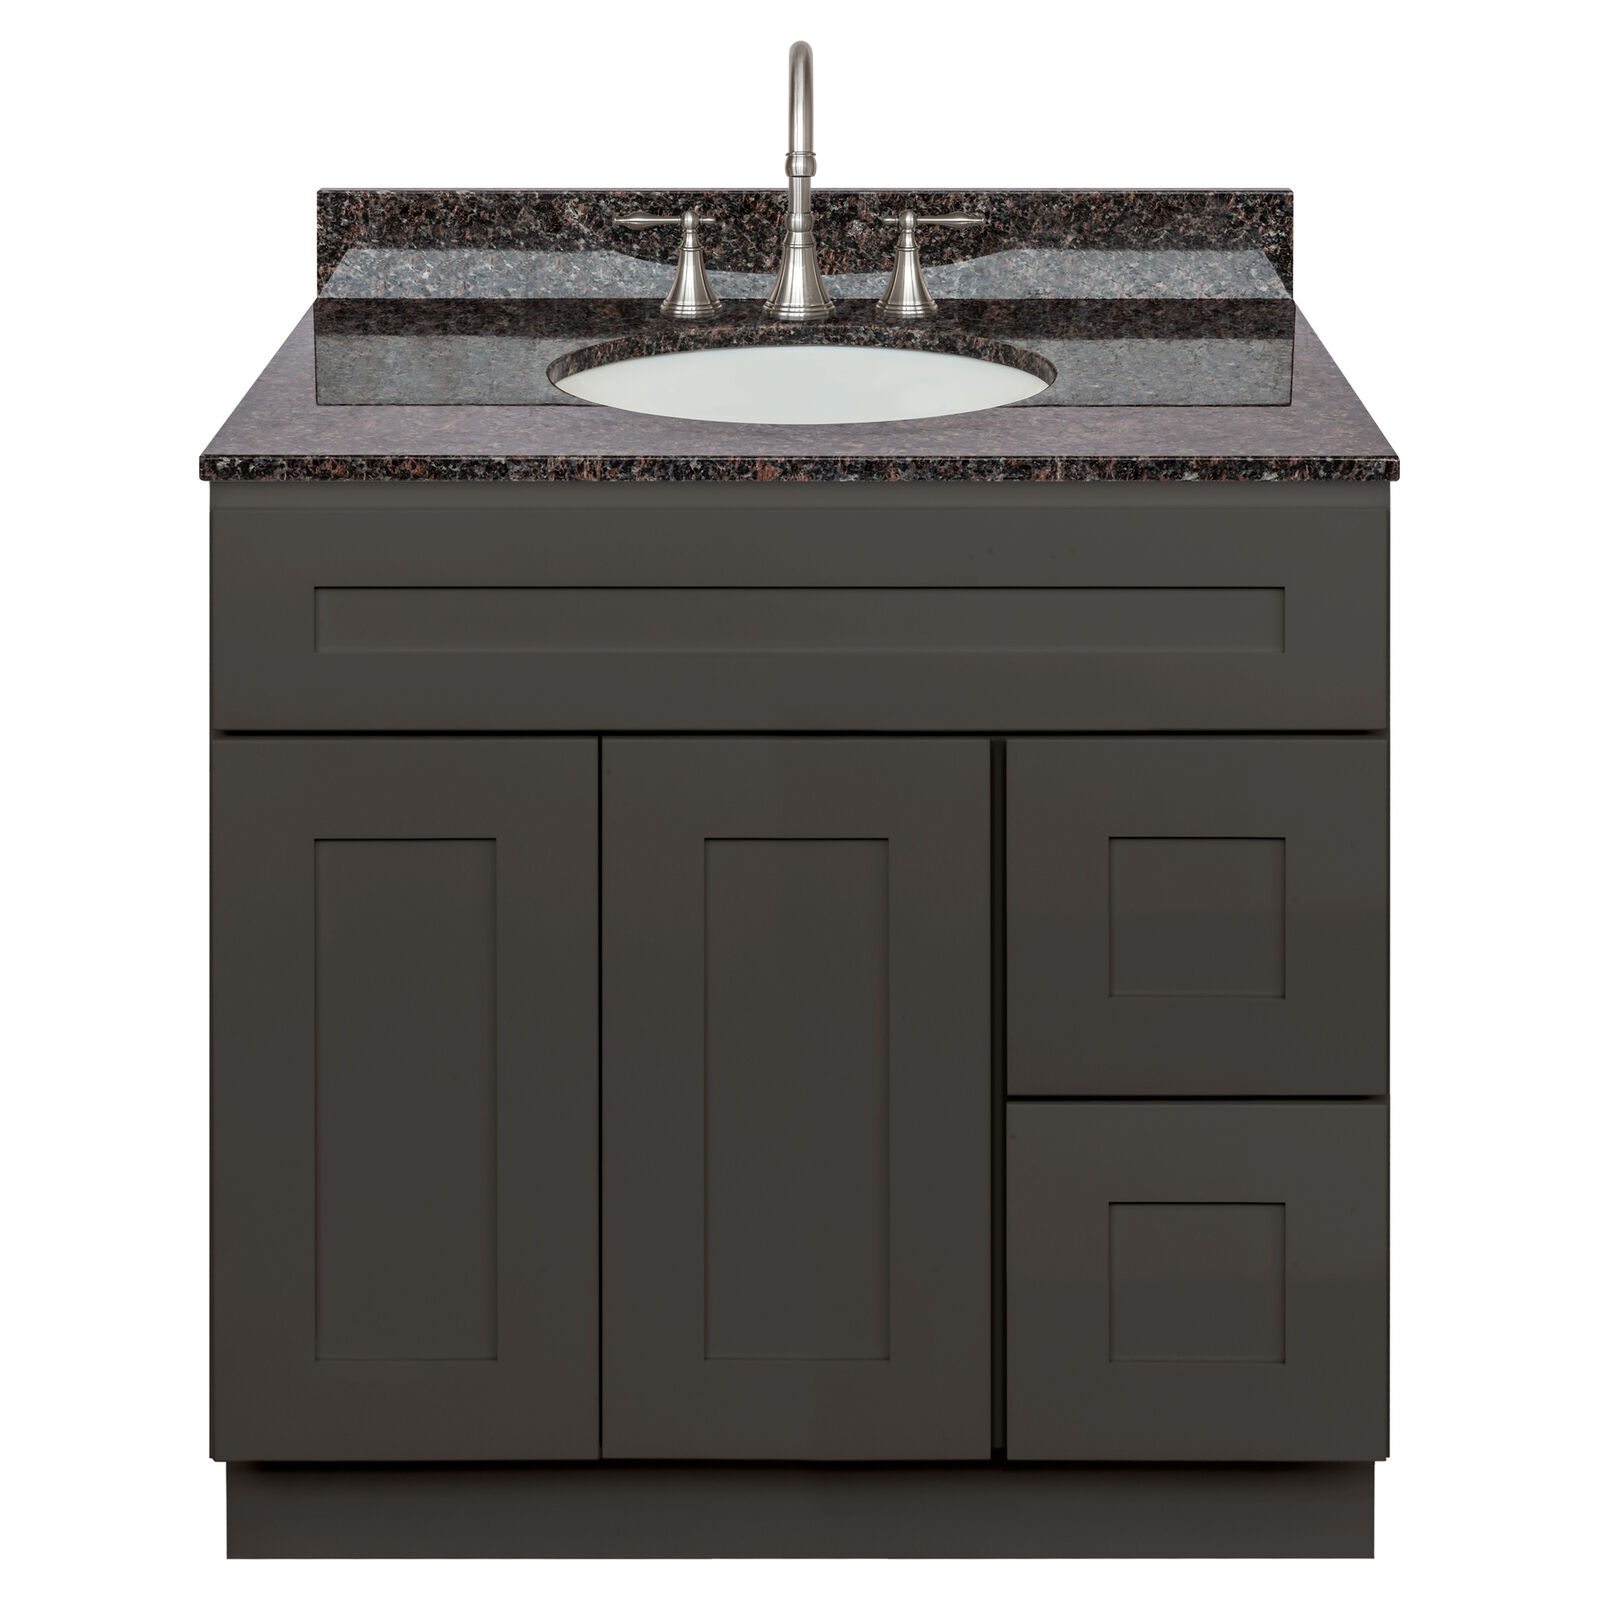 36" Vanity Cabinet Avalon Charcoal + Tan Brown Granite Top + Lb7b Faucet